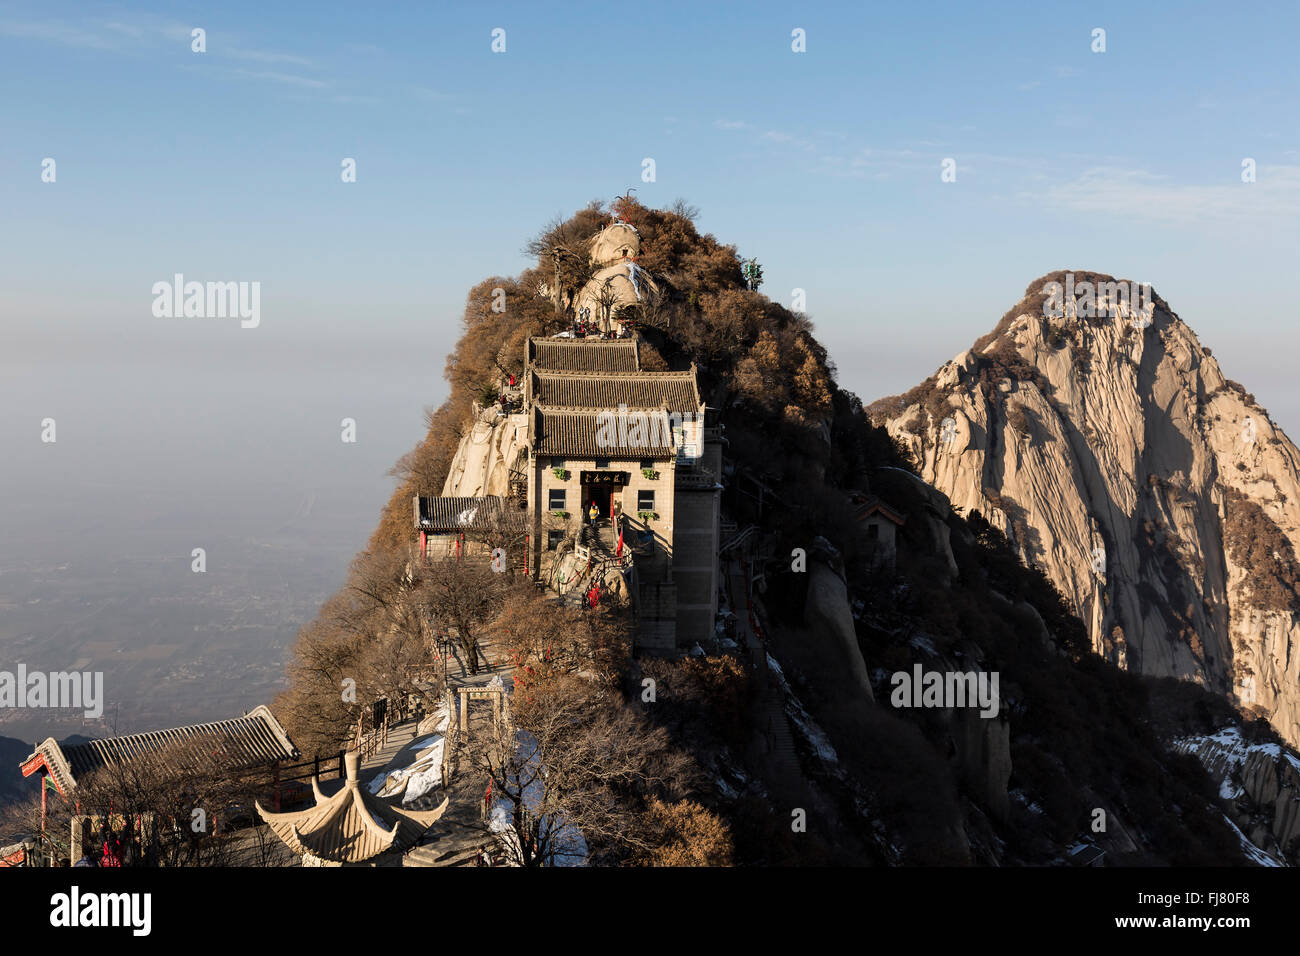 The North Peak of Mount Huashan, China Stock Photo